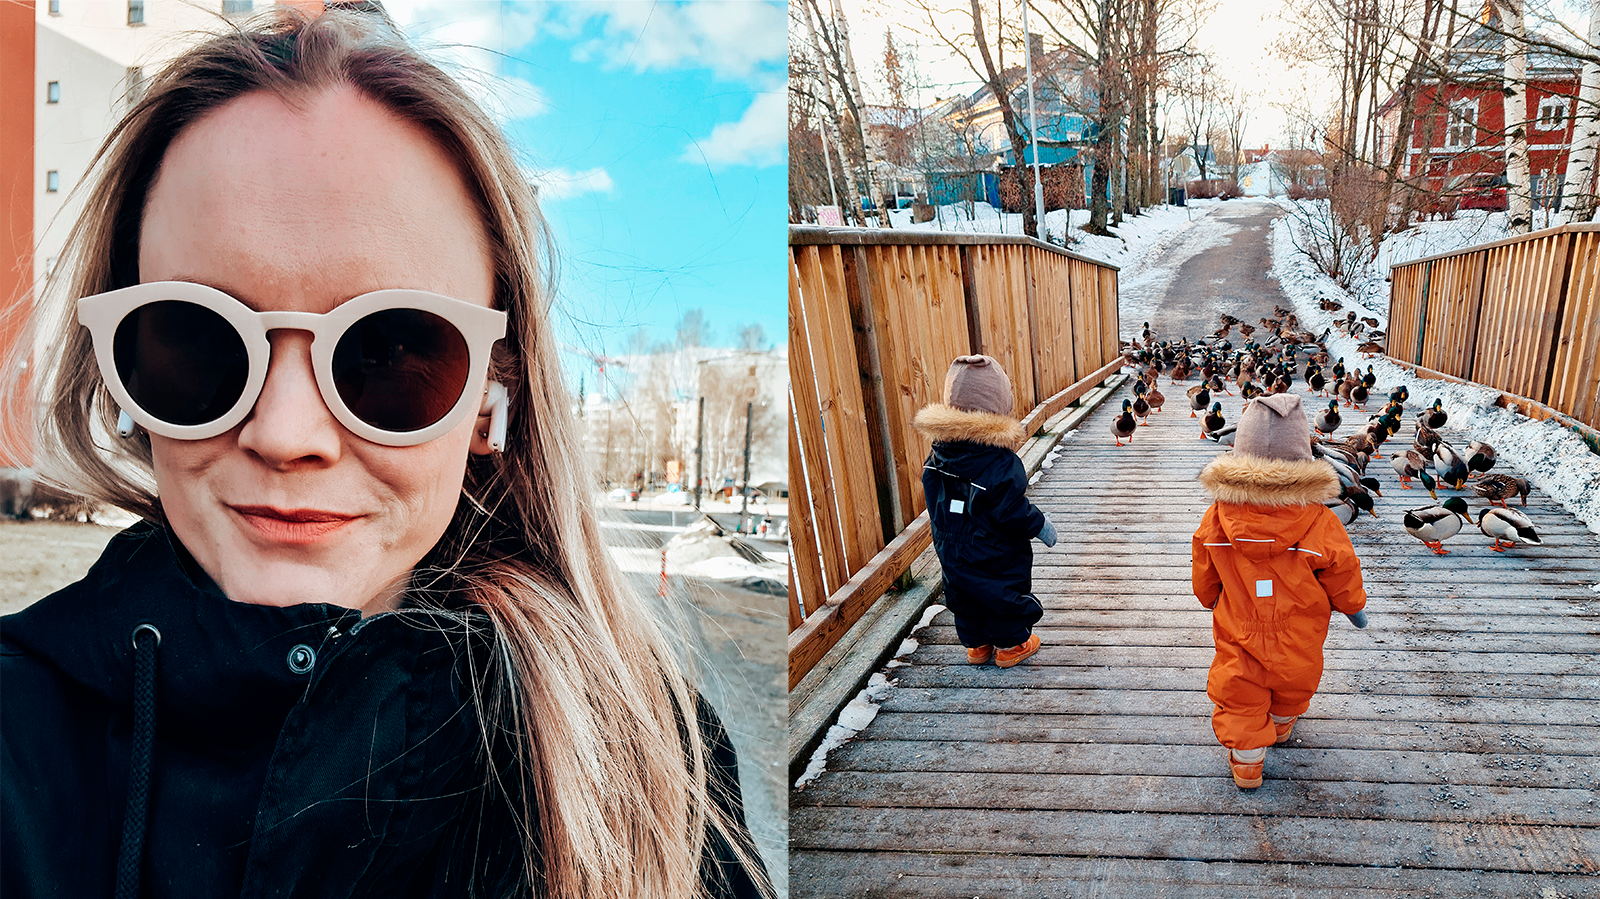 Vasemmalla vaaleahiuksinen nainen aurinkolasit silmillään. Oikealla kaksi lasta selin katsomassa sorsia sillalla.